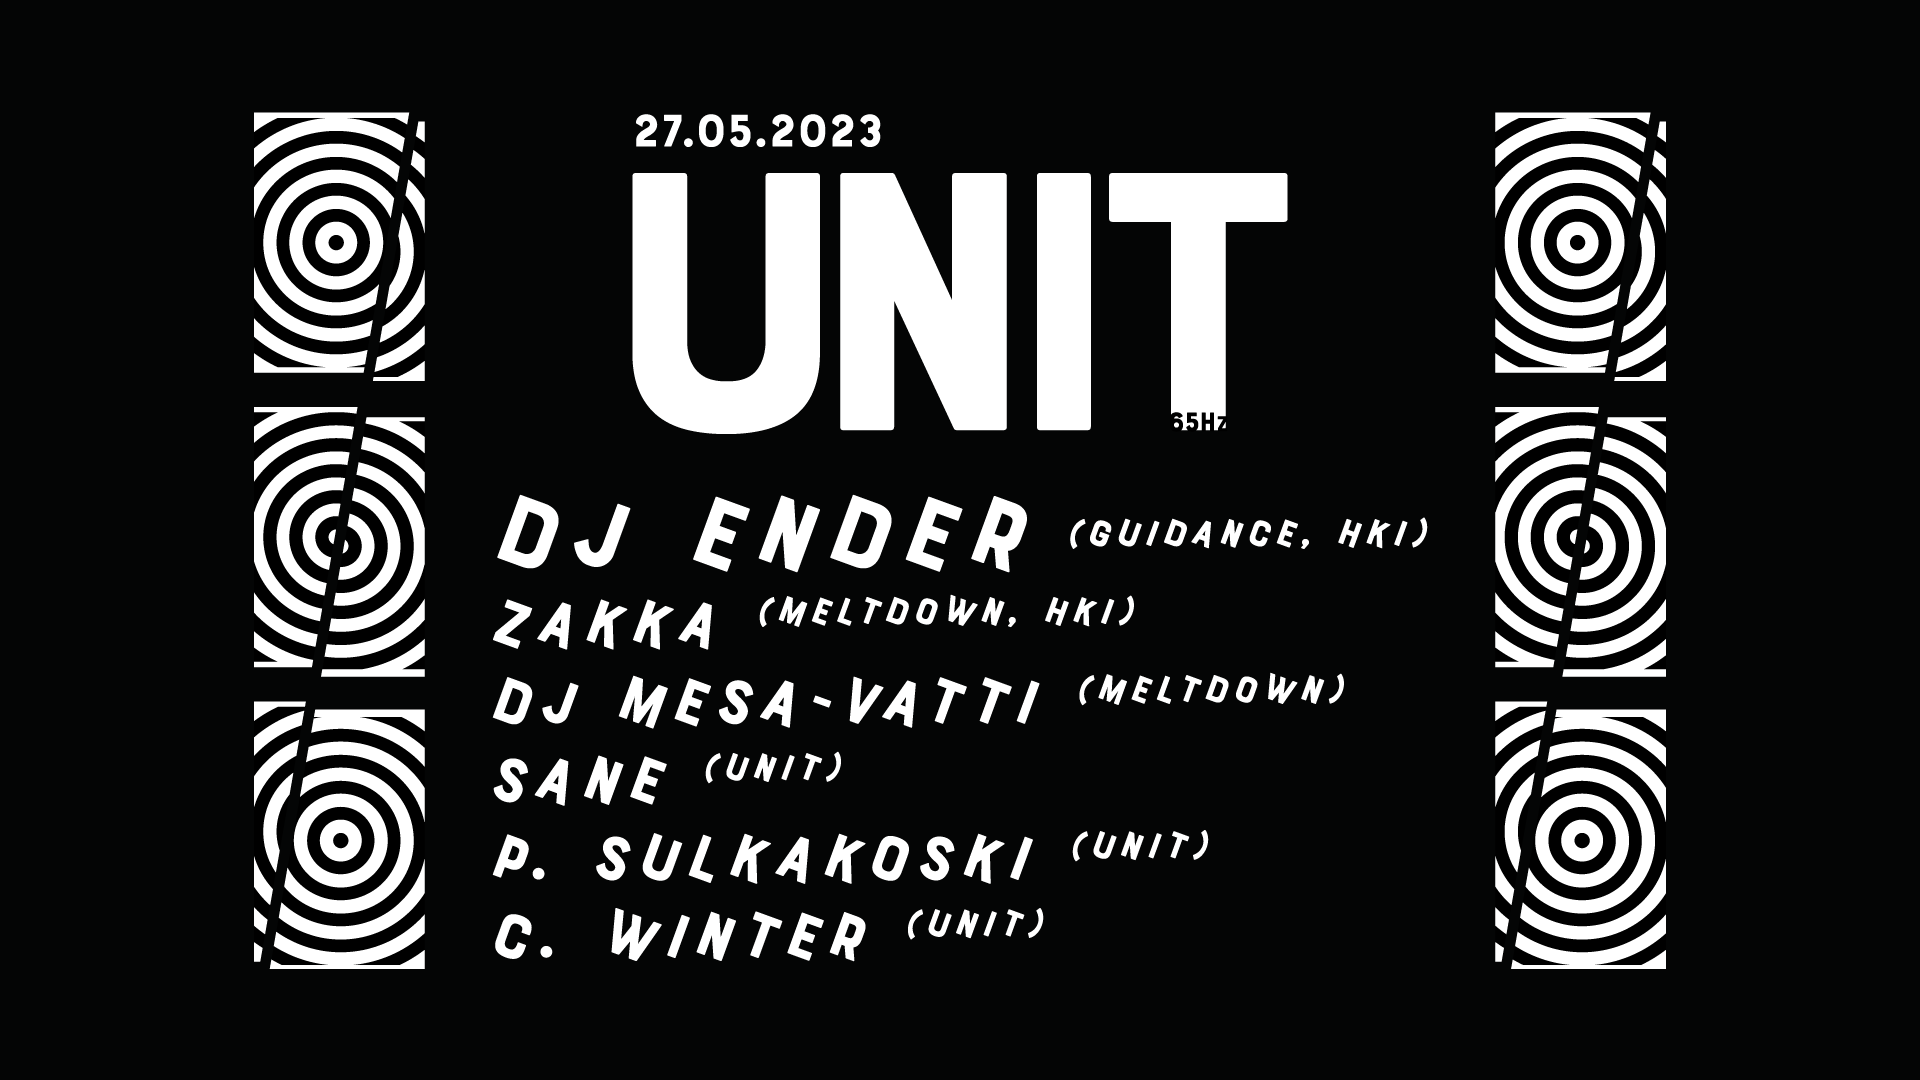 UNIT: DJ Ender & Folks, 27.05.2023